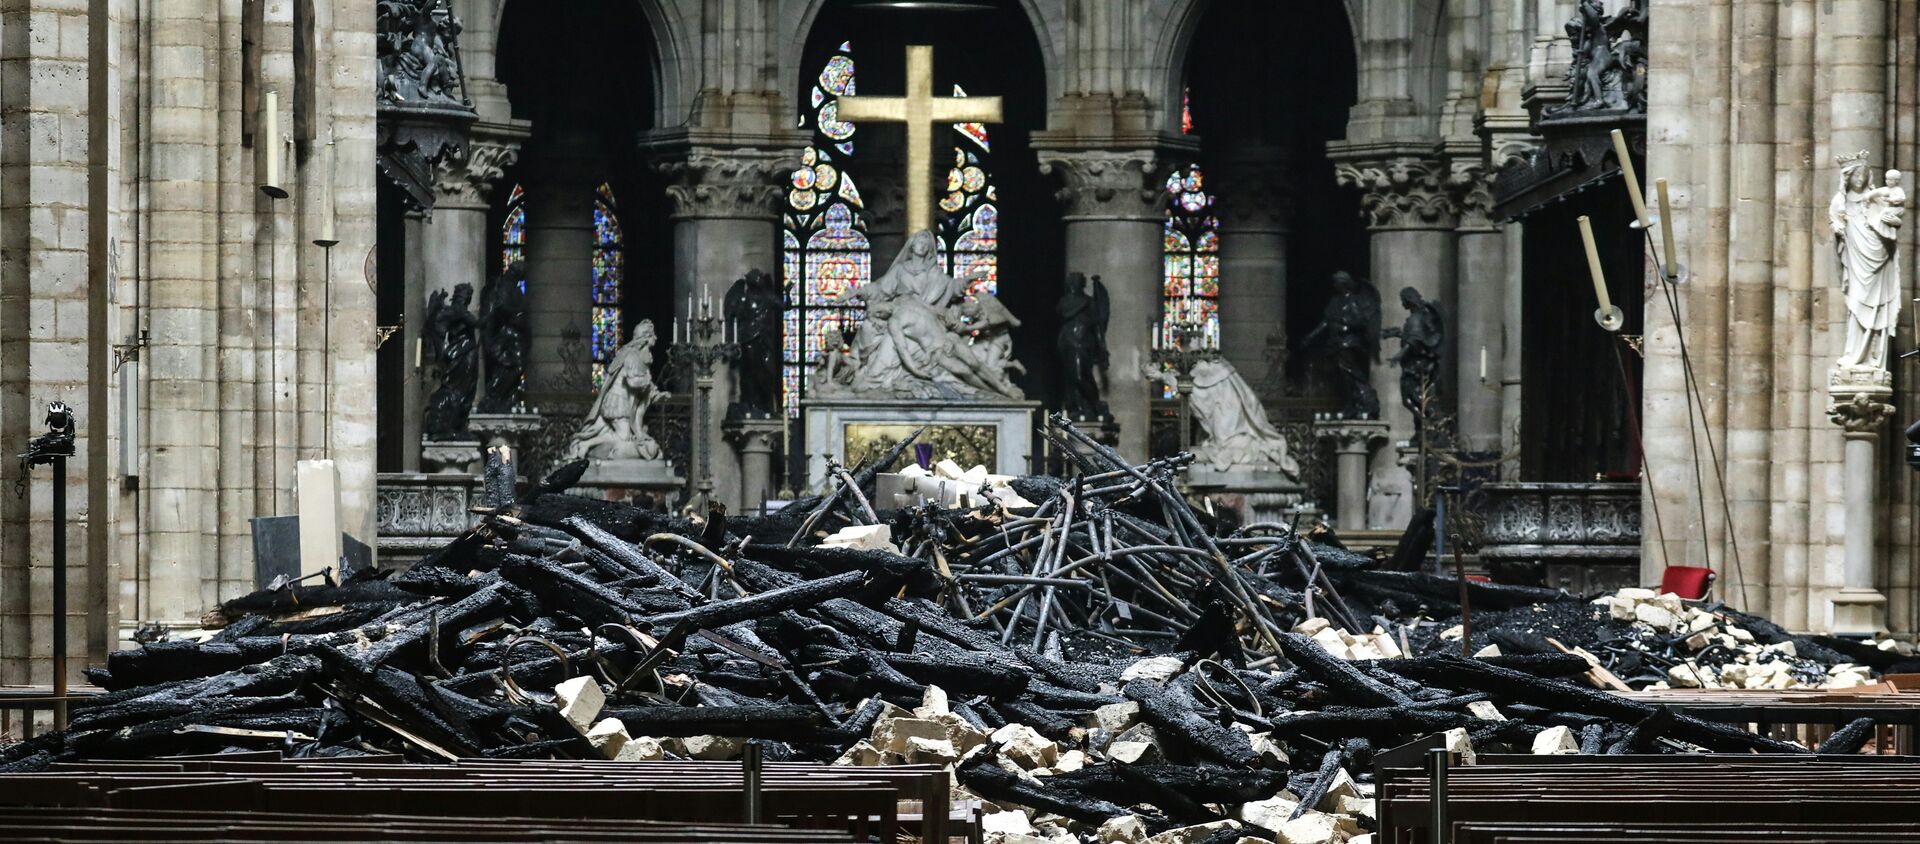 El interior de la catedral de Notre Dame de París tras el incendio - Sputnik Mundo, 1920, 16.04.2019